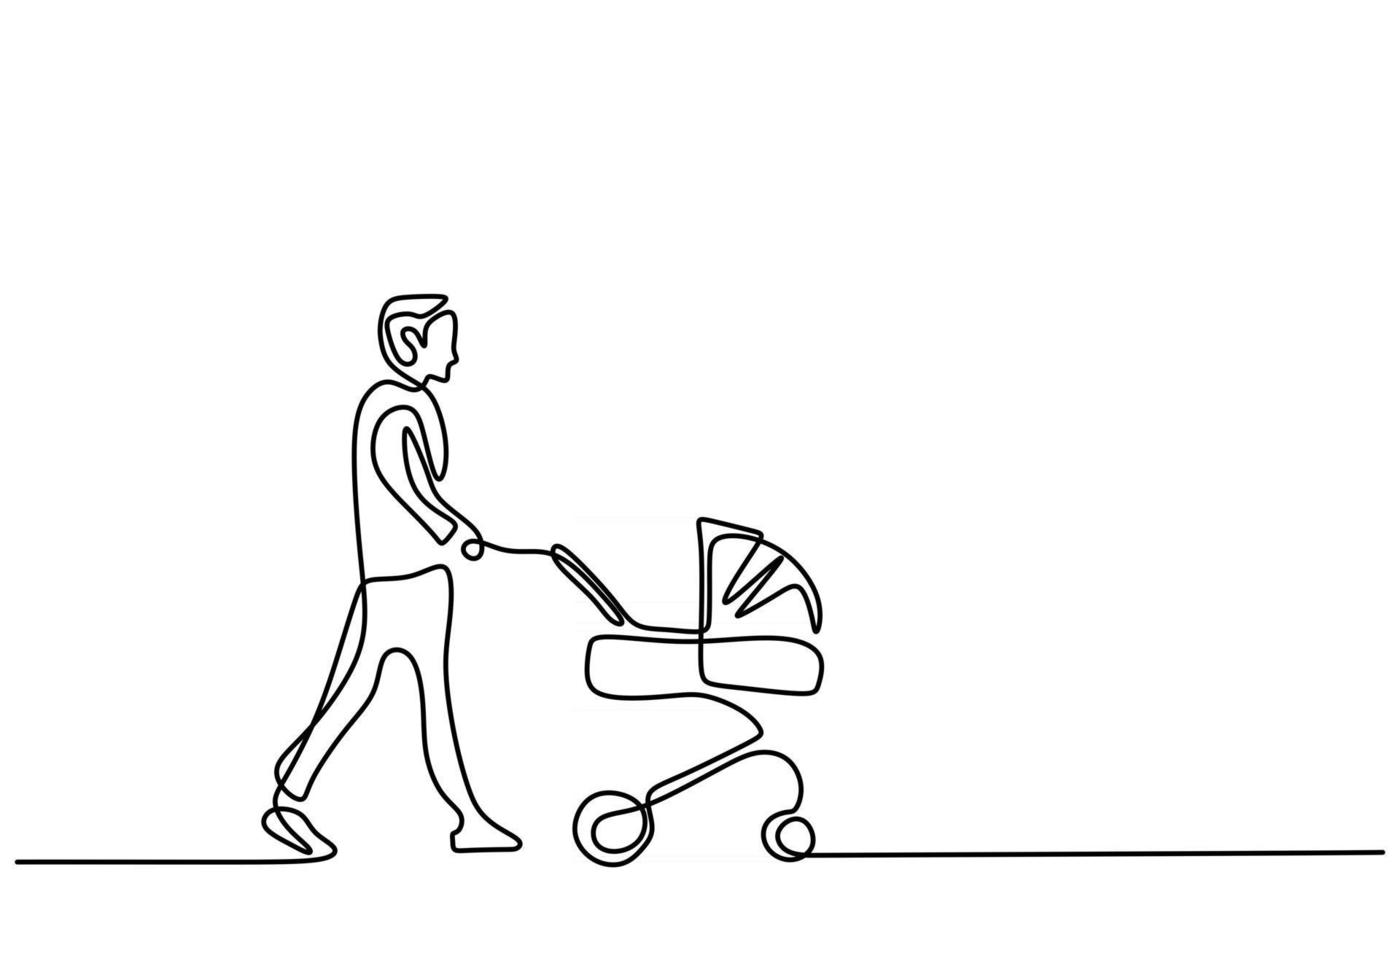 desenho de linha única contínua do jovem pai feliz empurrando o carrinho de bebê isolado no fundo branco vetor